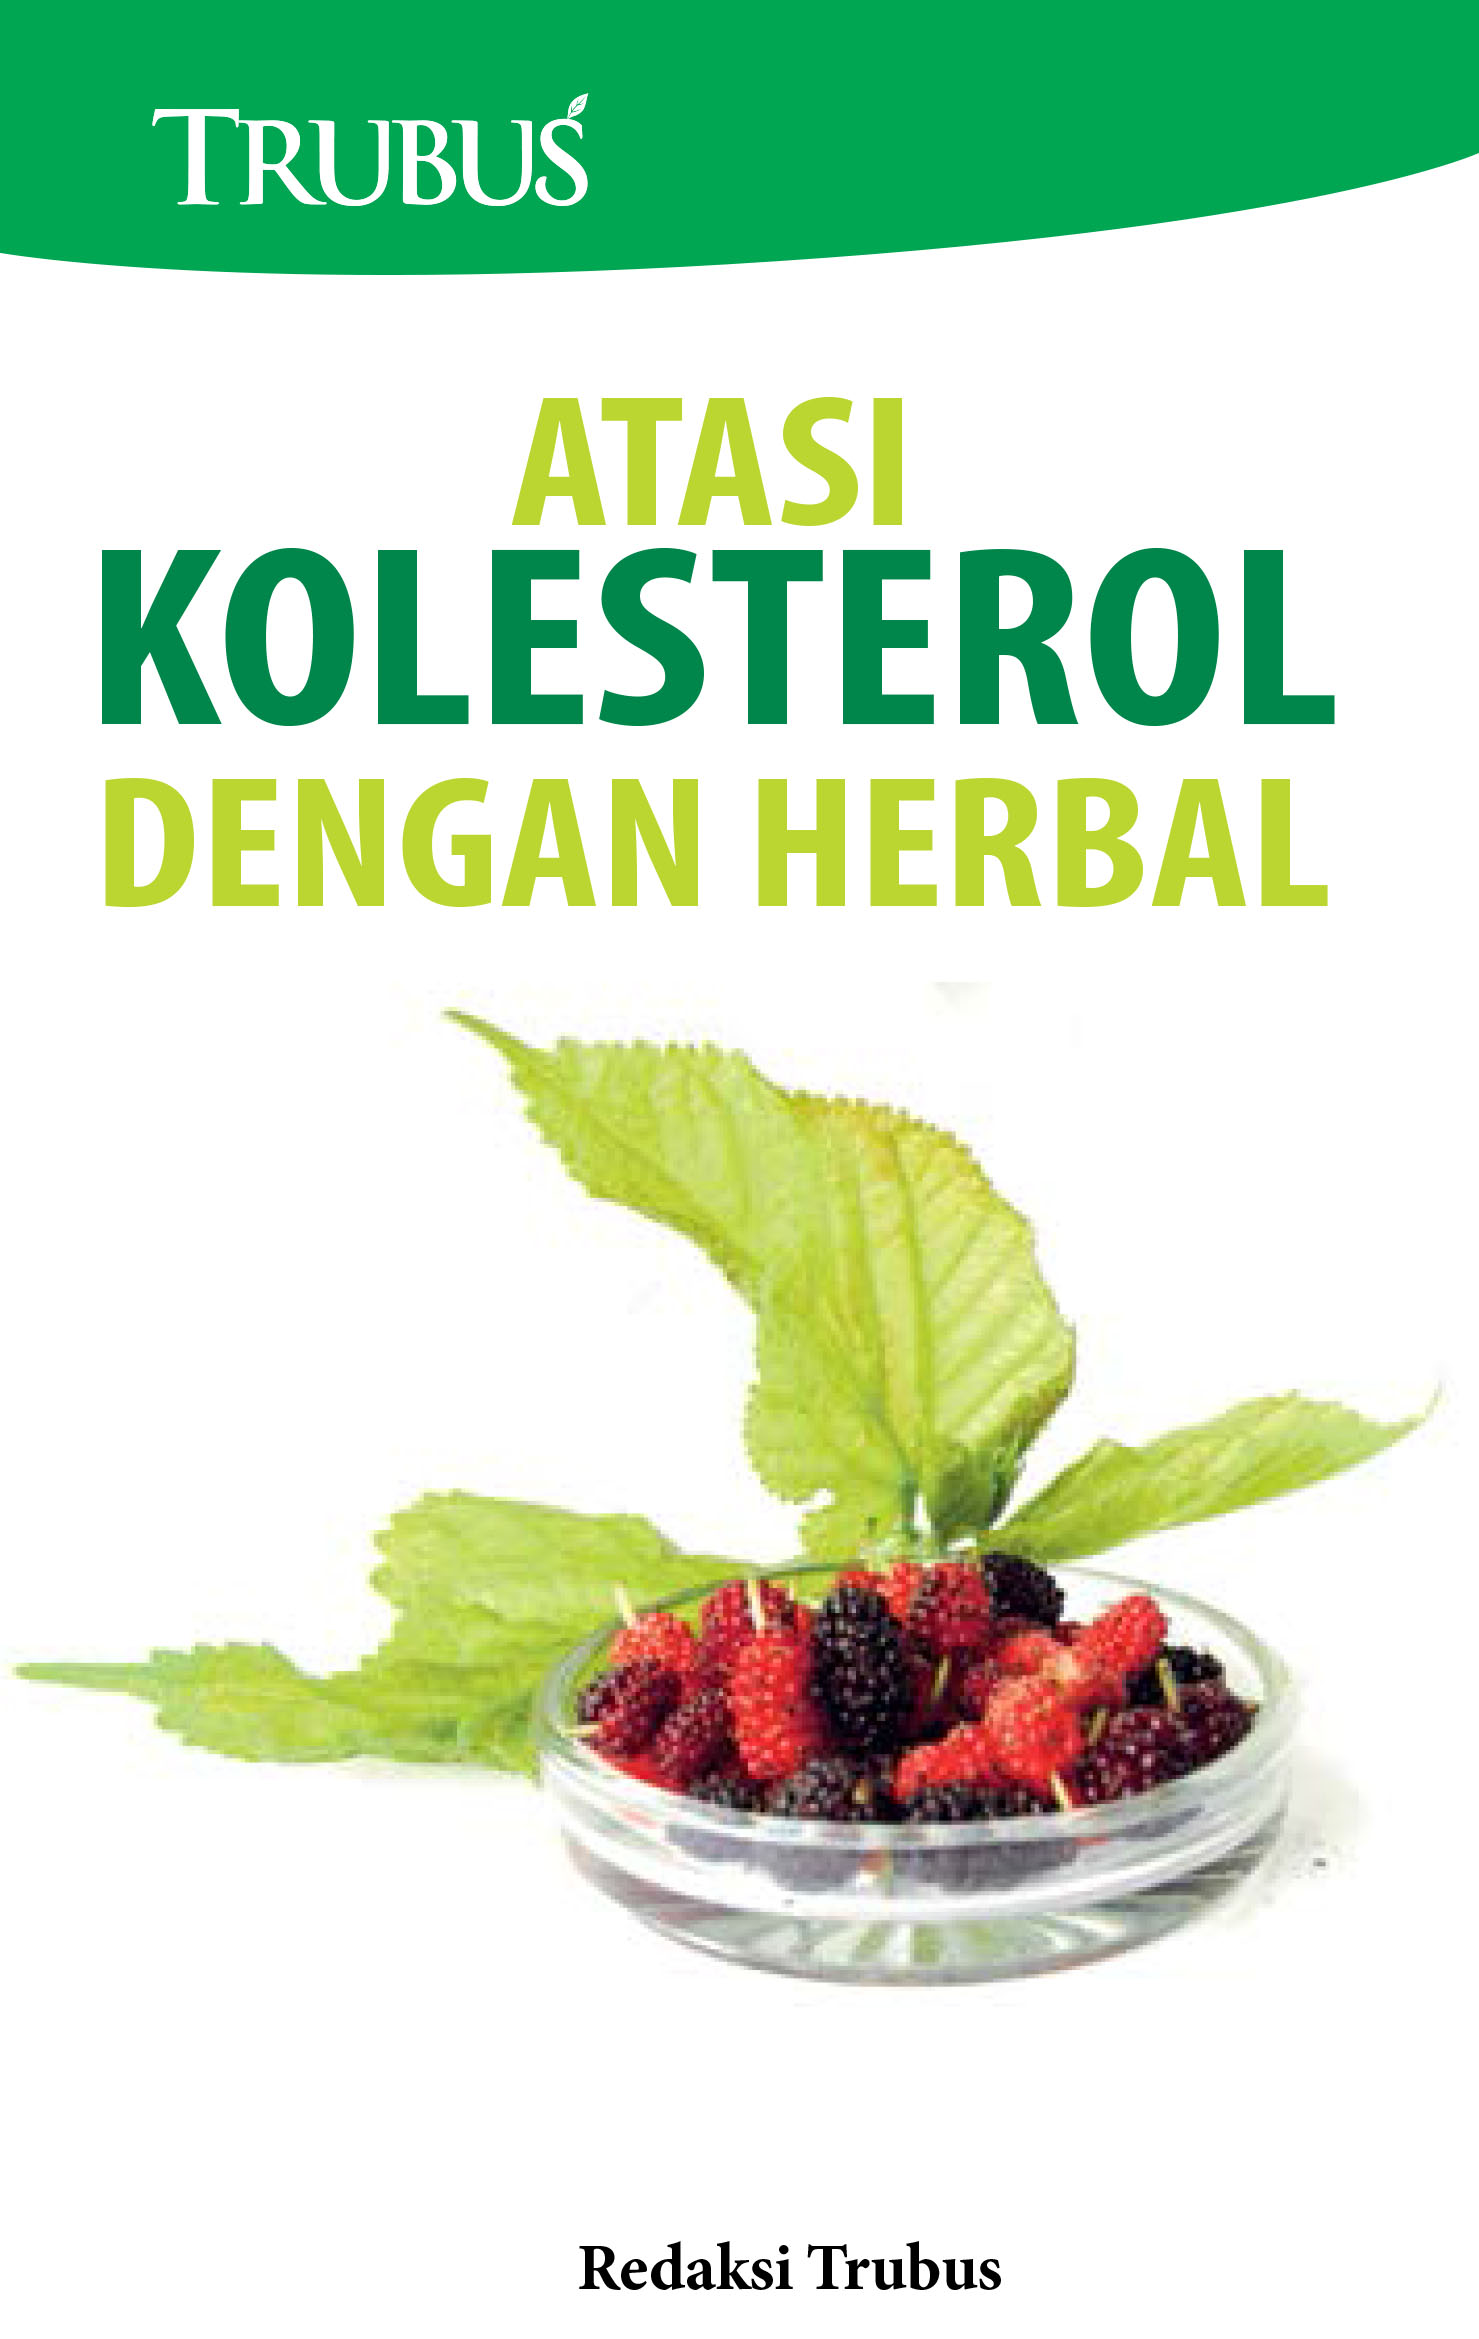 Atasi kolesterol dengan herbal [sumber elektronis]